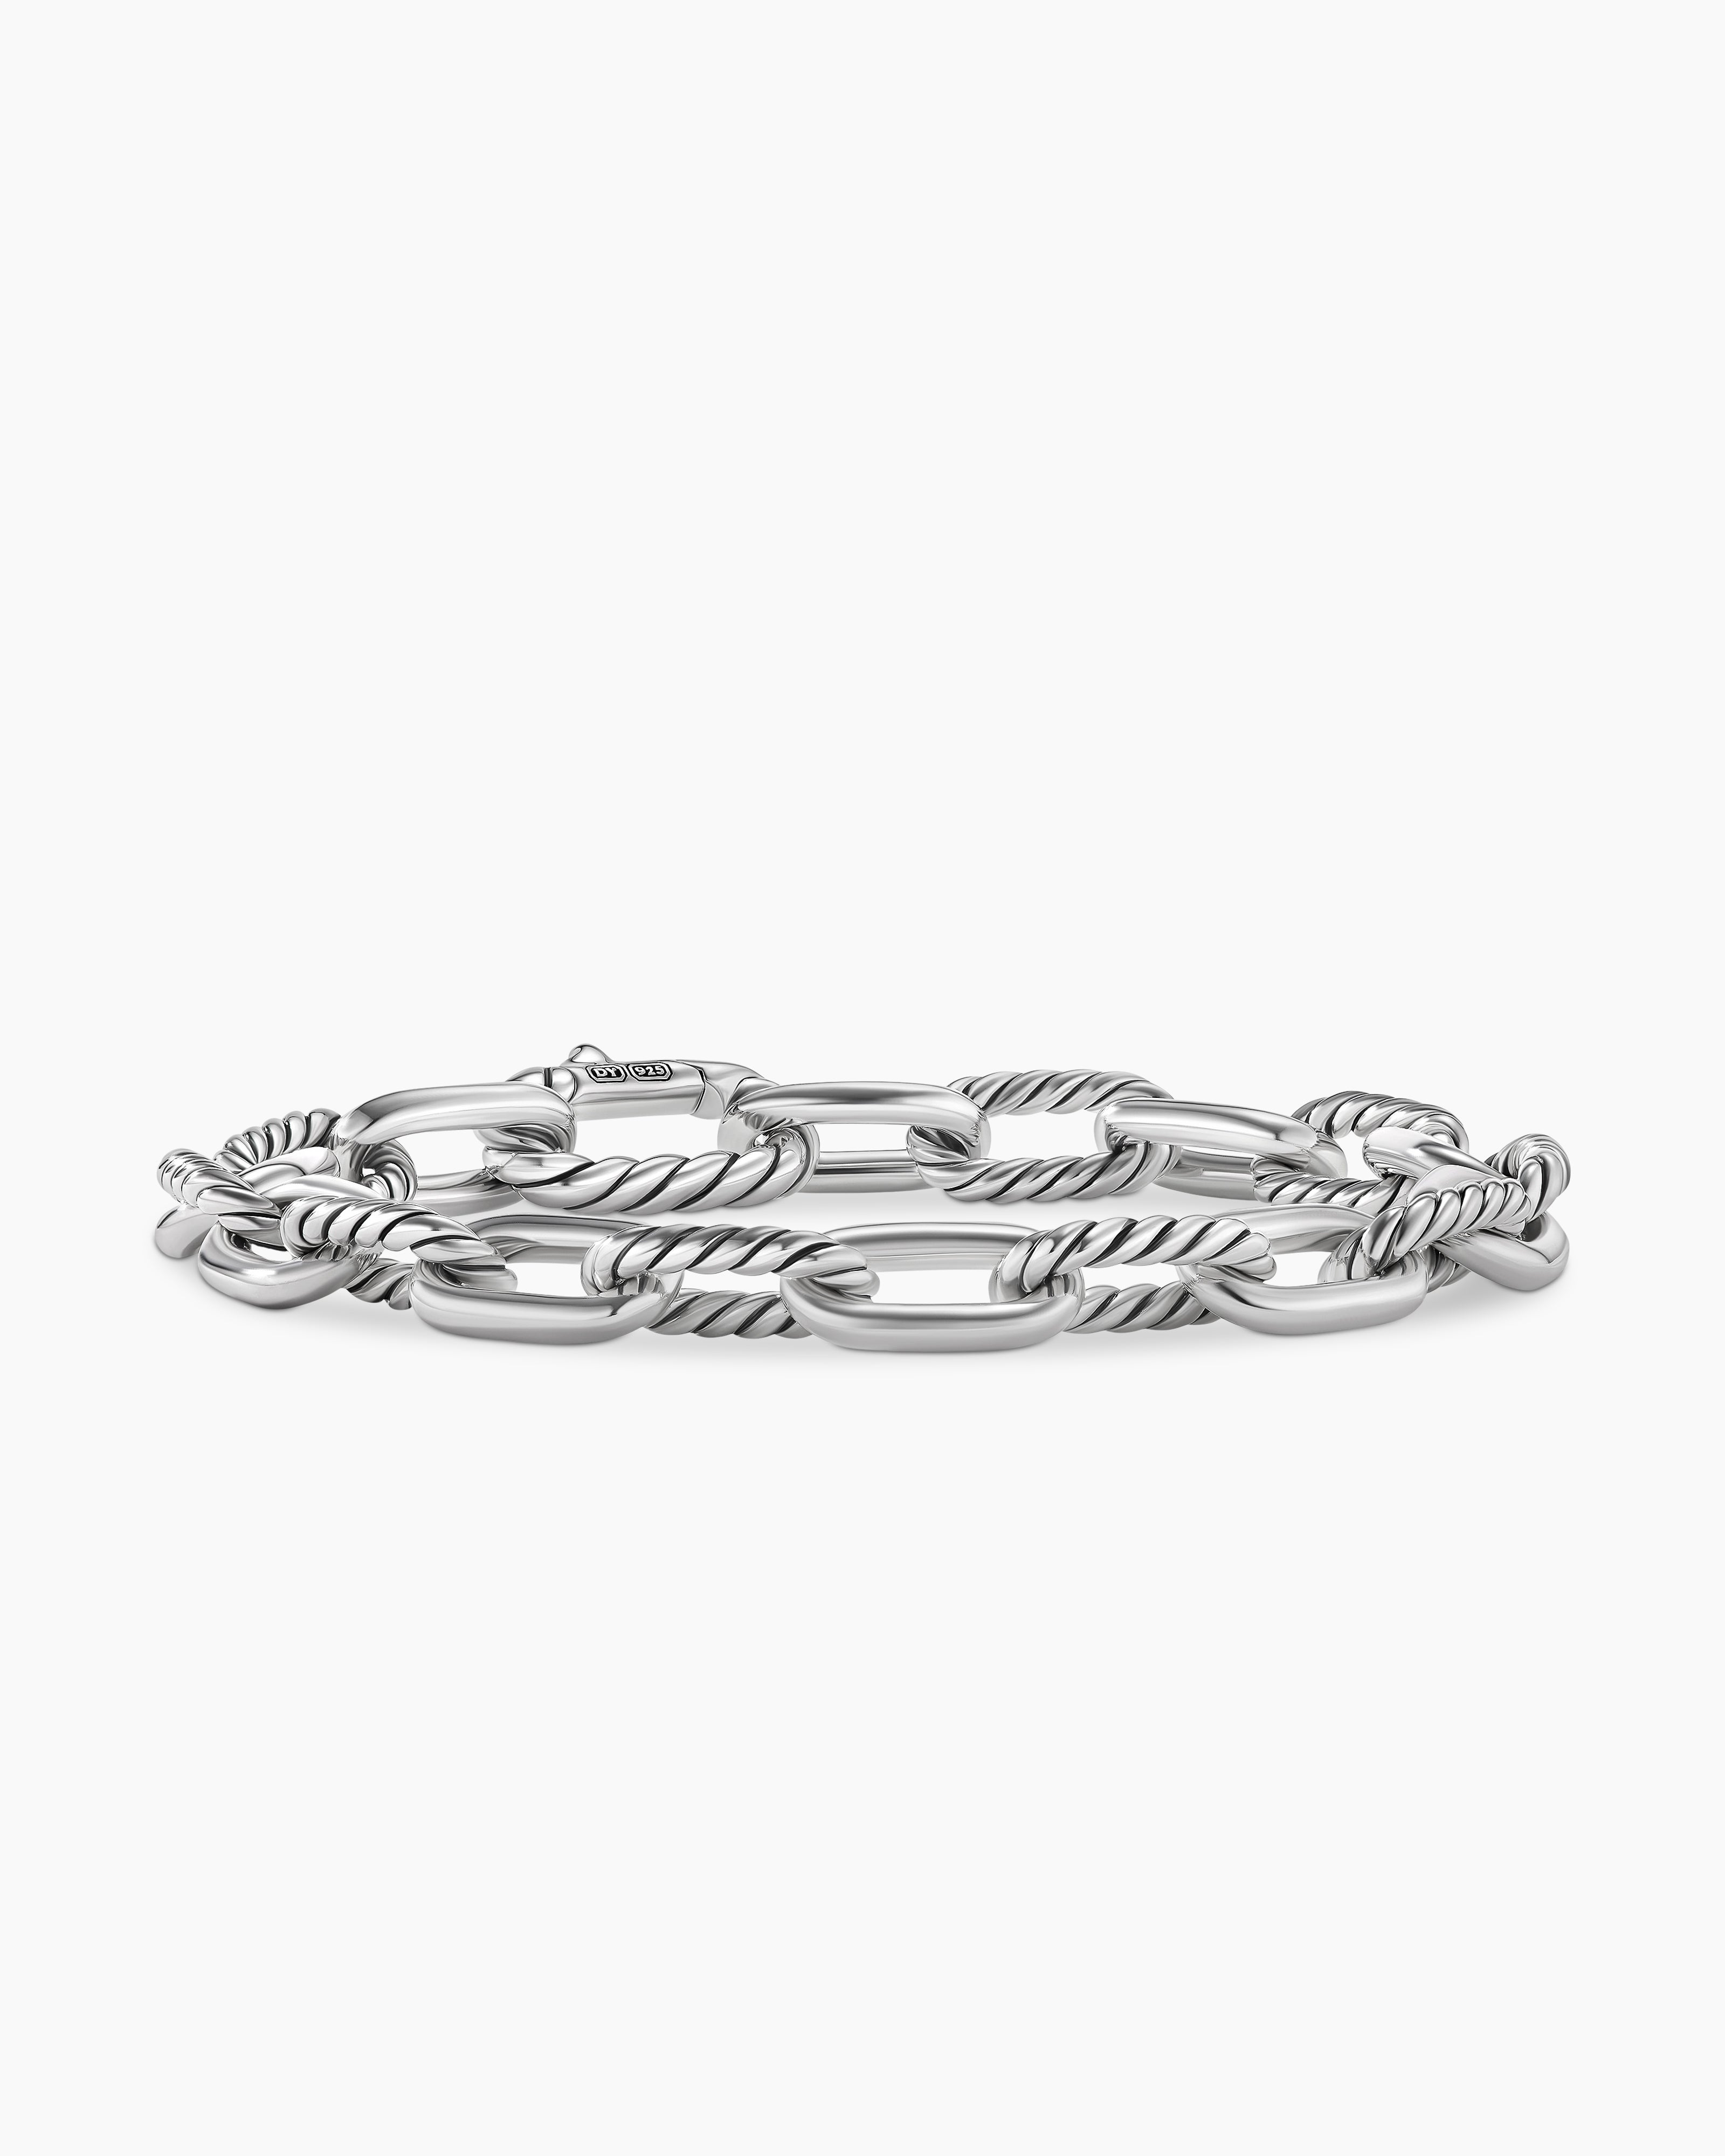 Elongated Open Link Chain Bracelet in Sterling Silver, 8mm | David Yurman